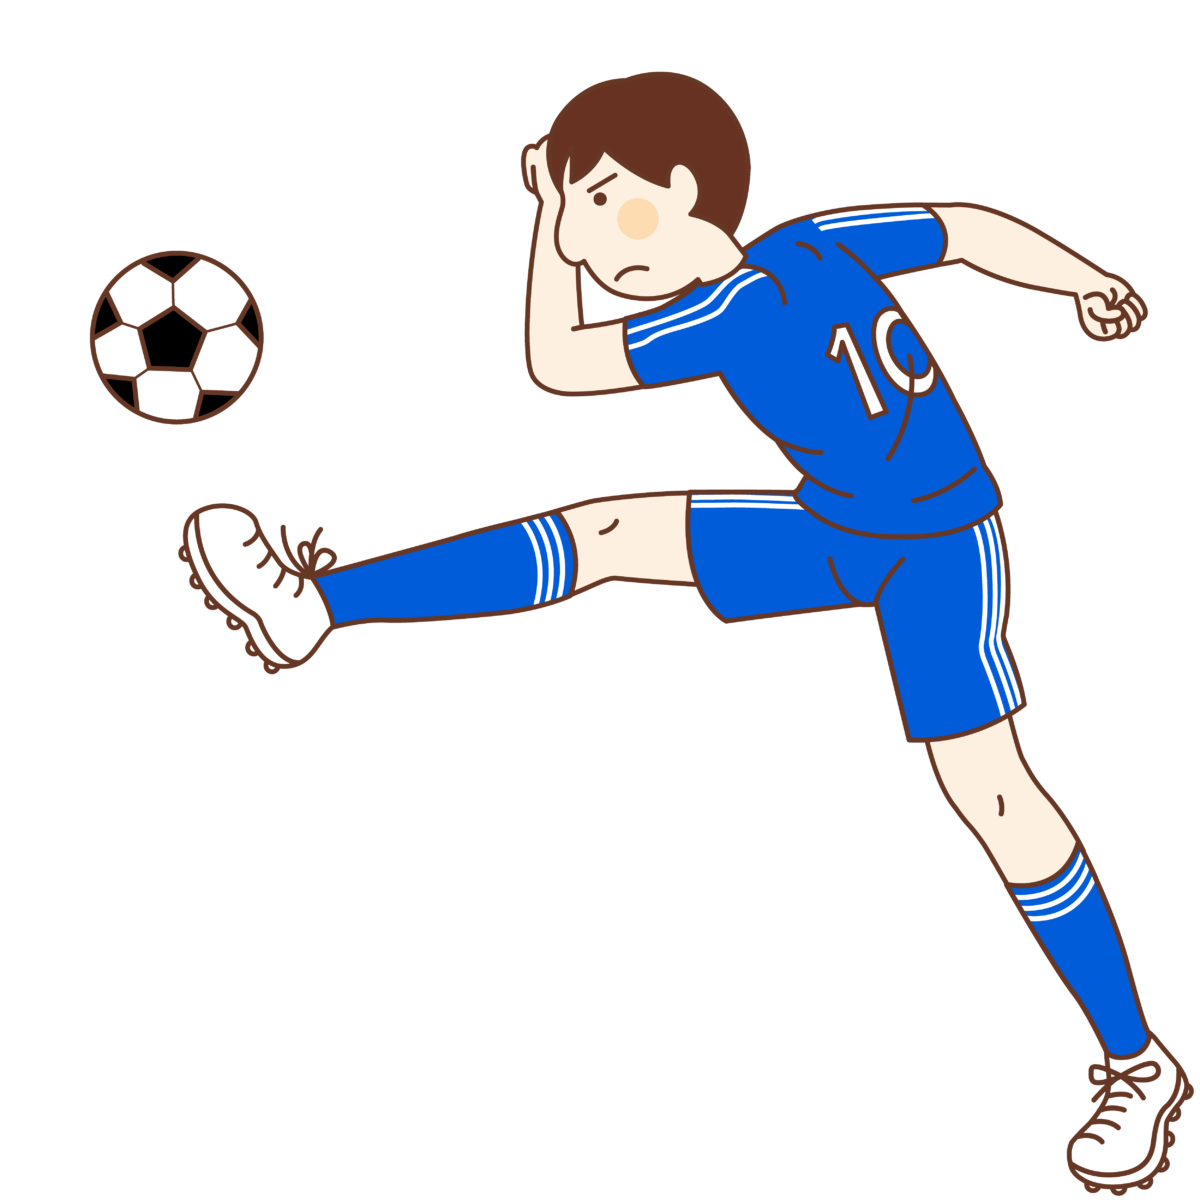 サッカー用語の ゴラッソ とは 意味や由来 使い方を解説 ネットペディア ネット用語やオタク用語の意味解説サイト